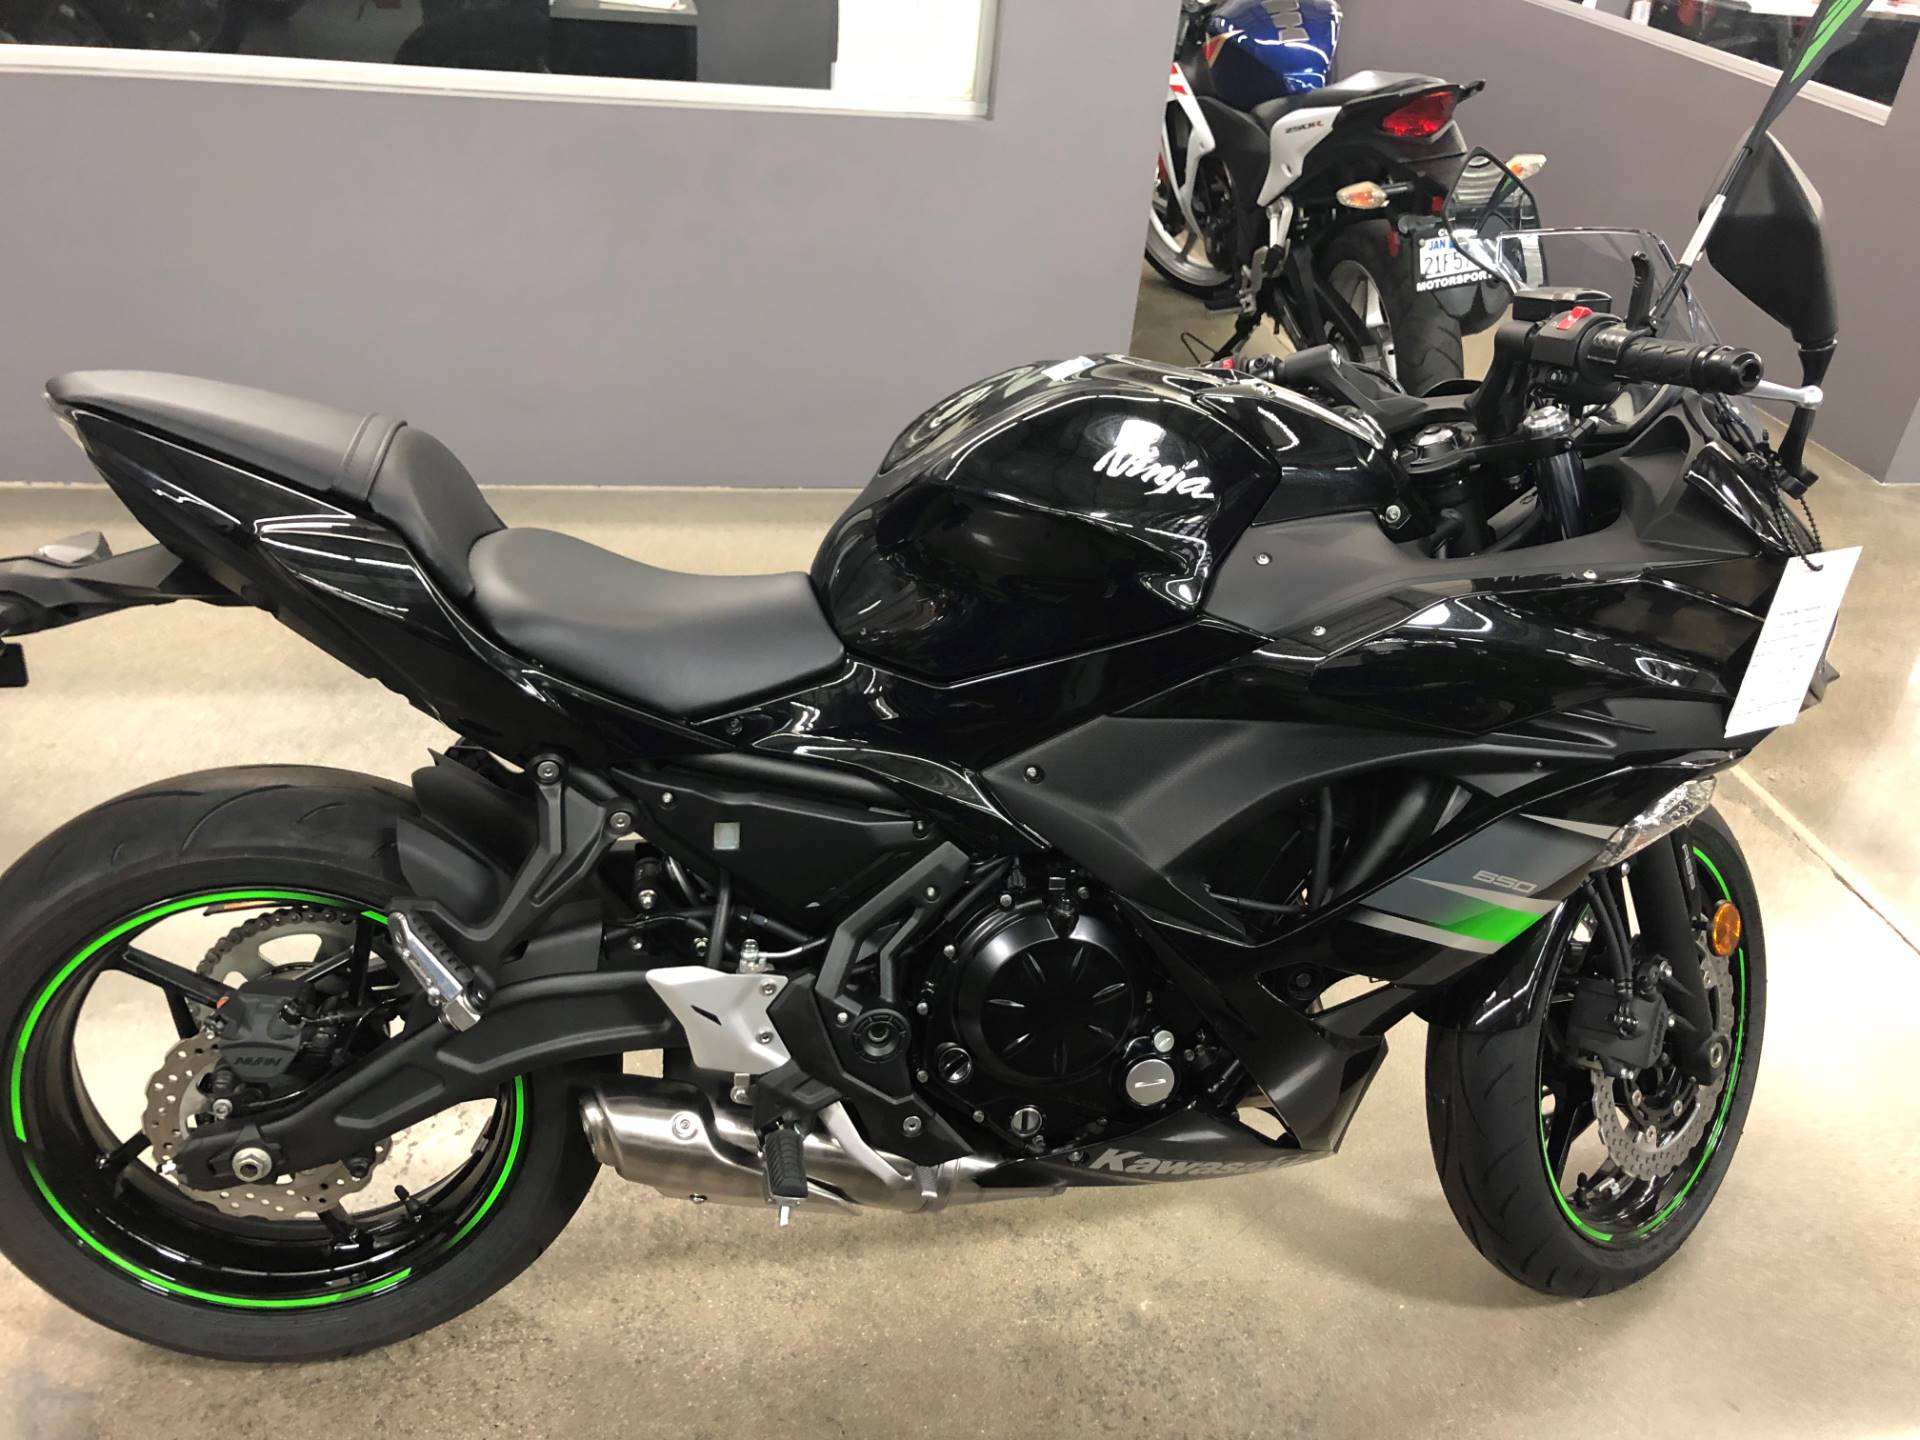 2019 Kawasaki Ninja 650 ABS 1